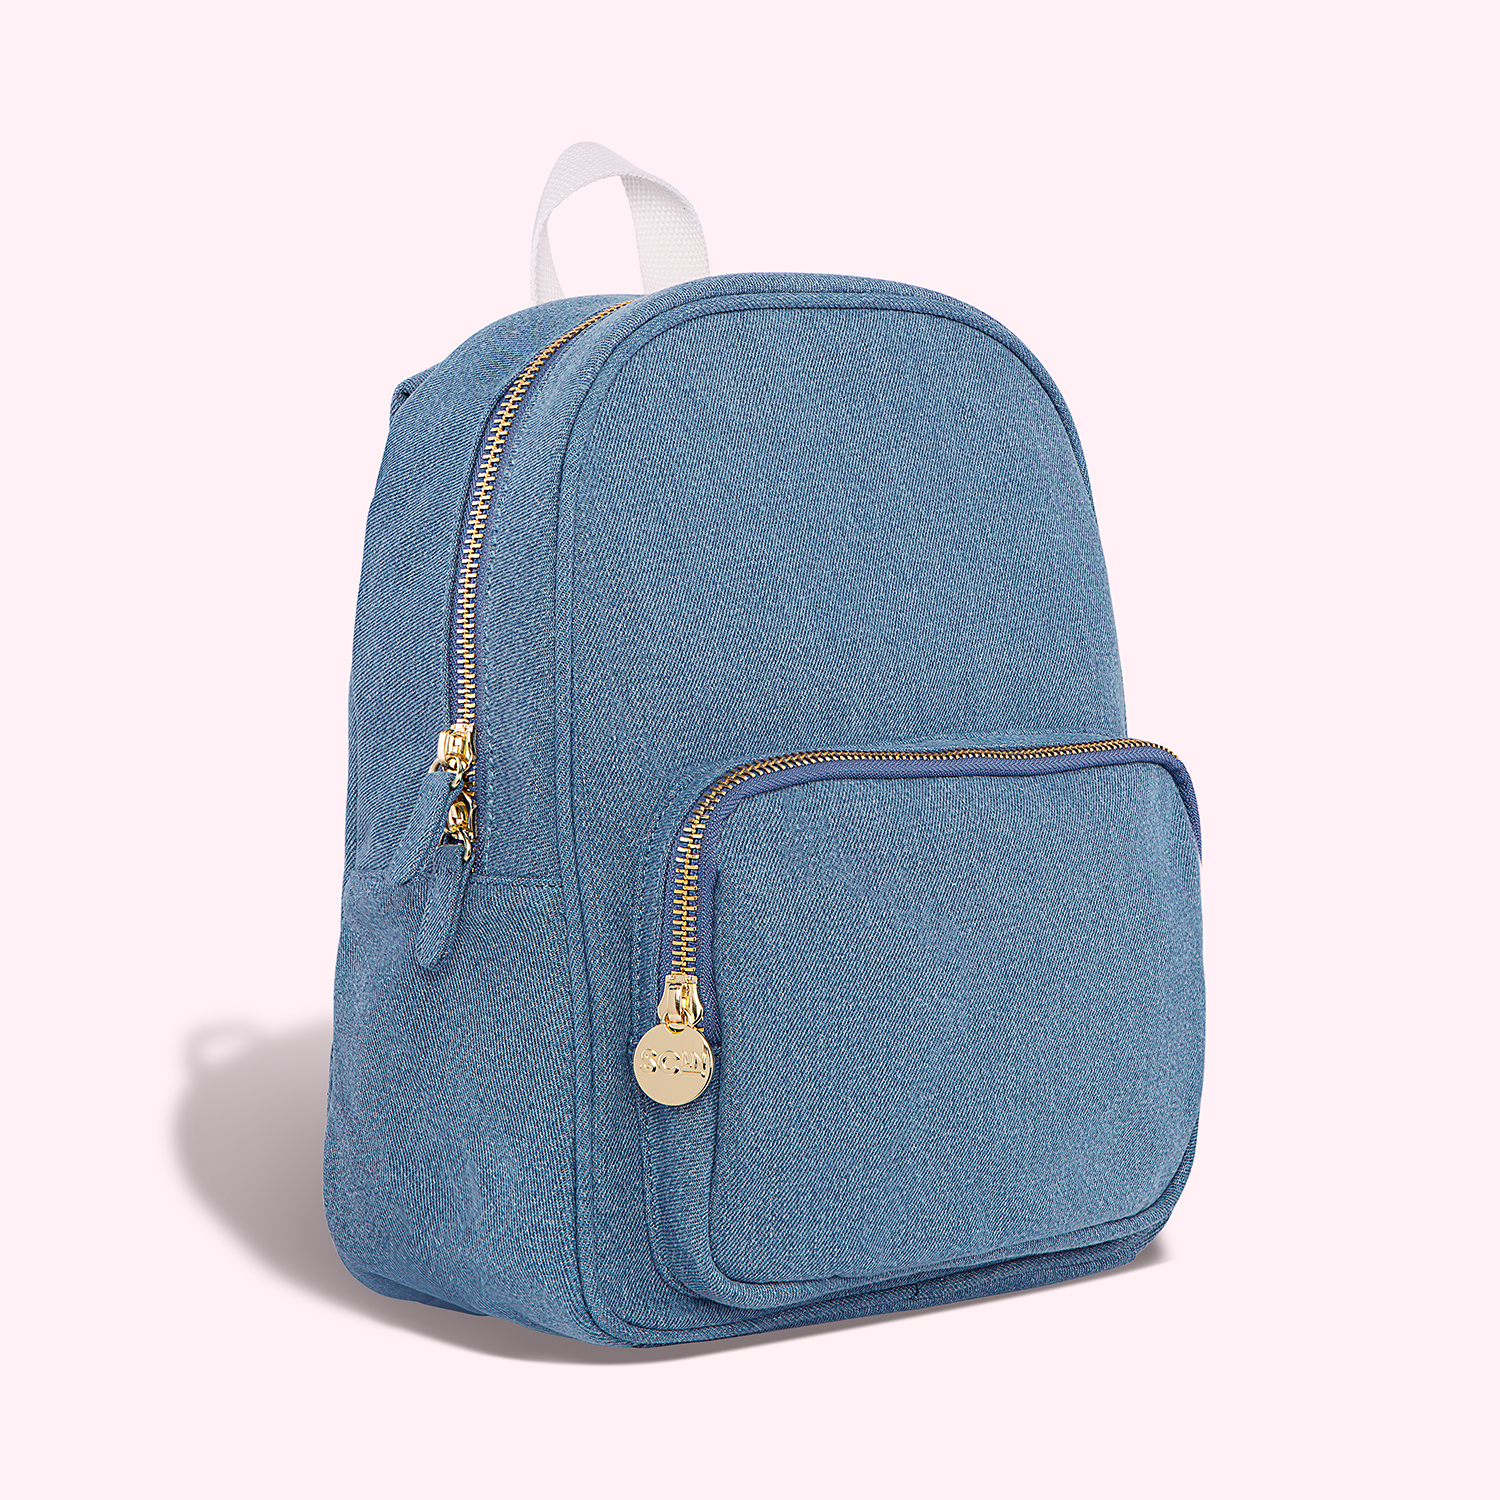 Denim Exterior Small Bags  Backpack Handbags for Women for sale  eBay